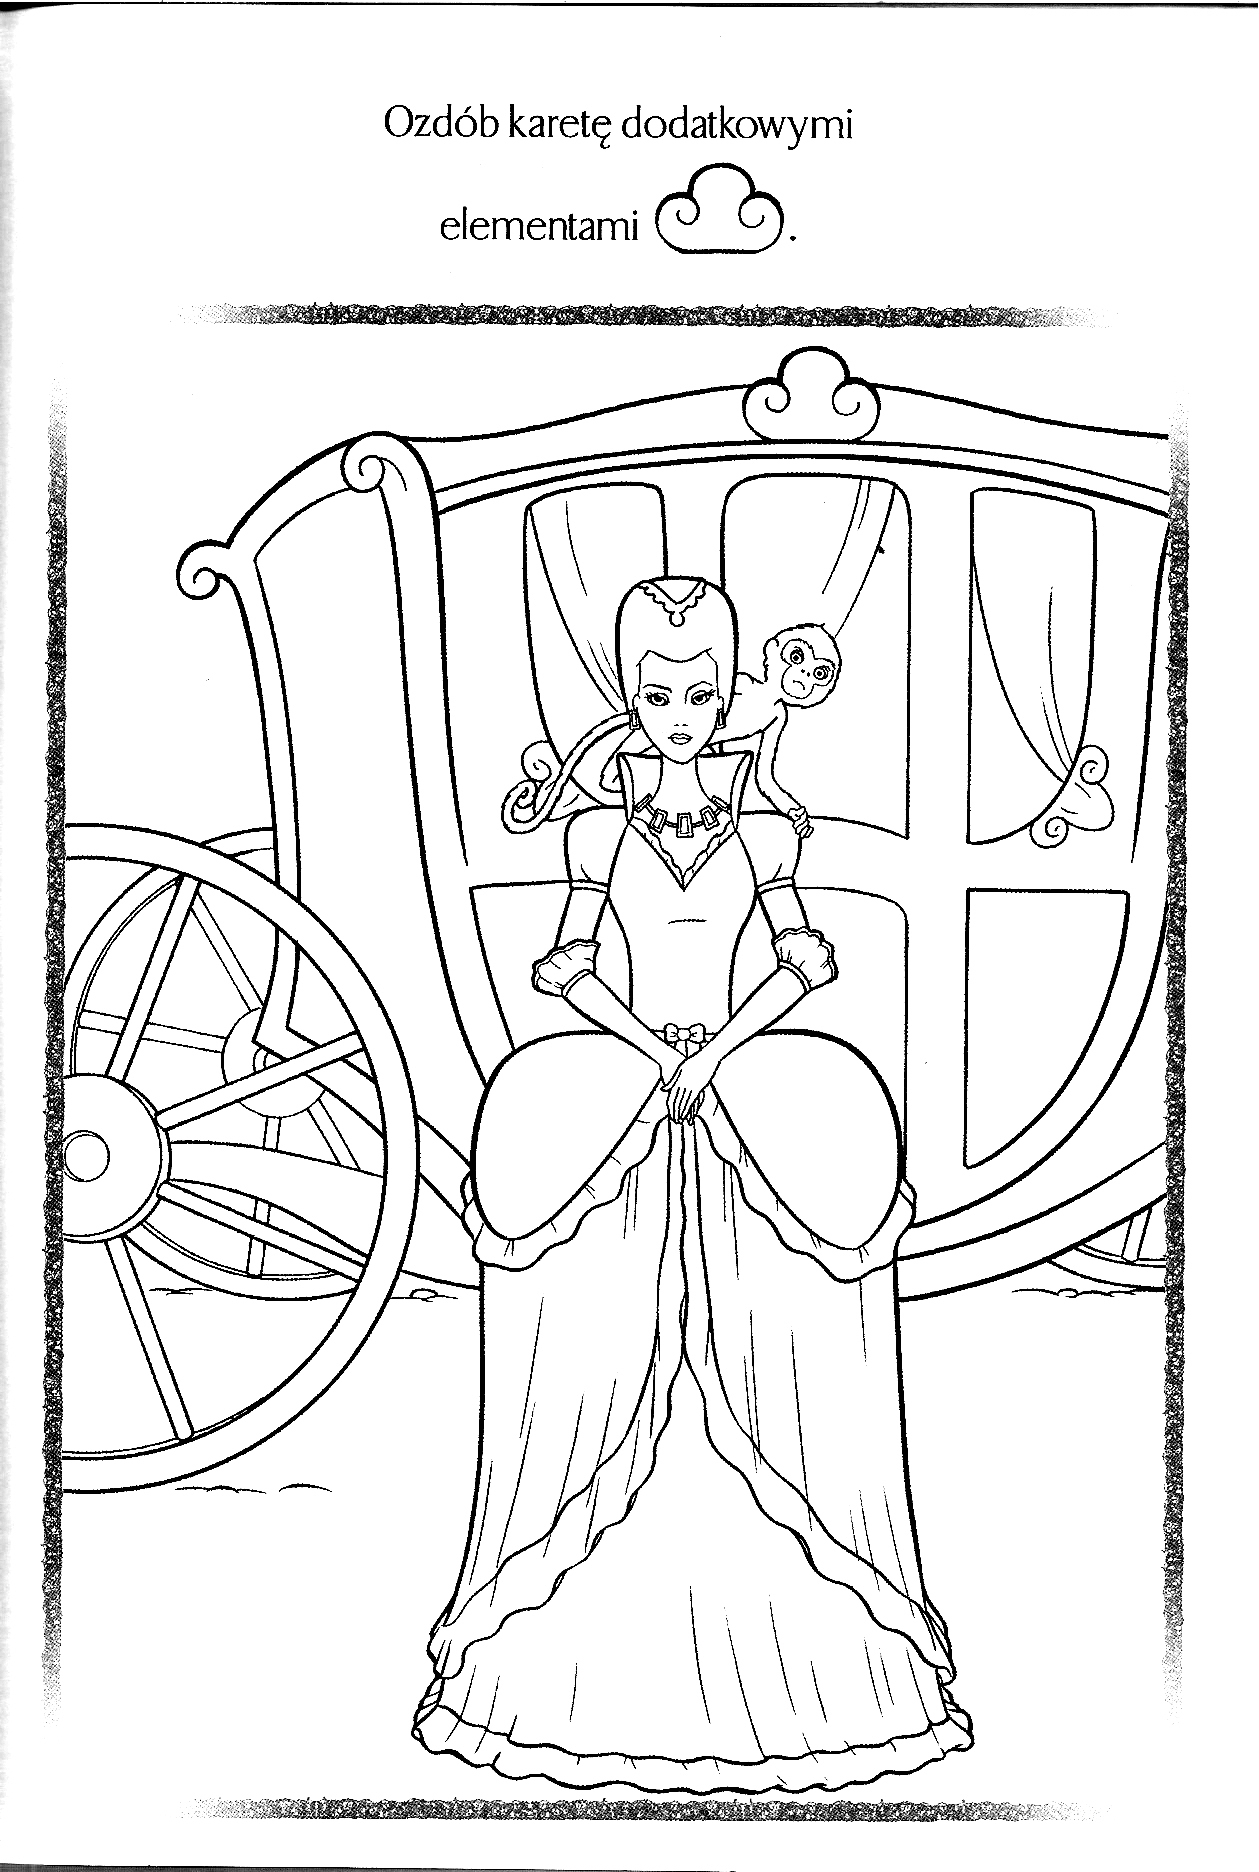 Kolorowanka księżniczka stoi w szerokiej odświętnej sukni przed karotą z małpką na ramionach